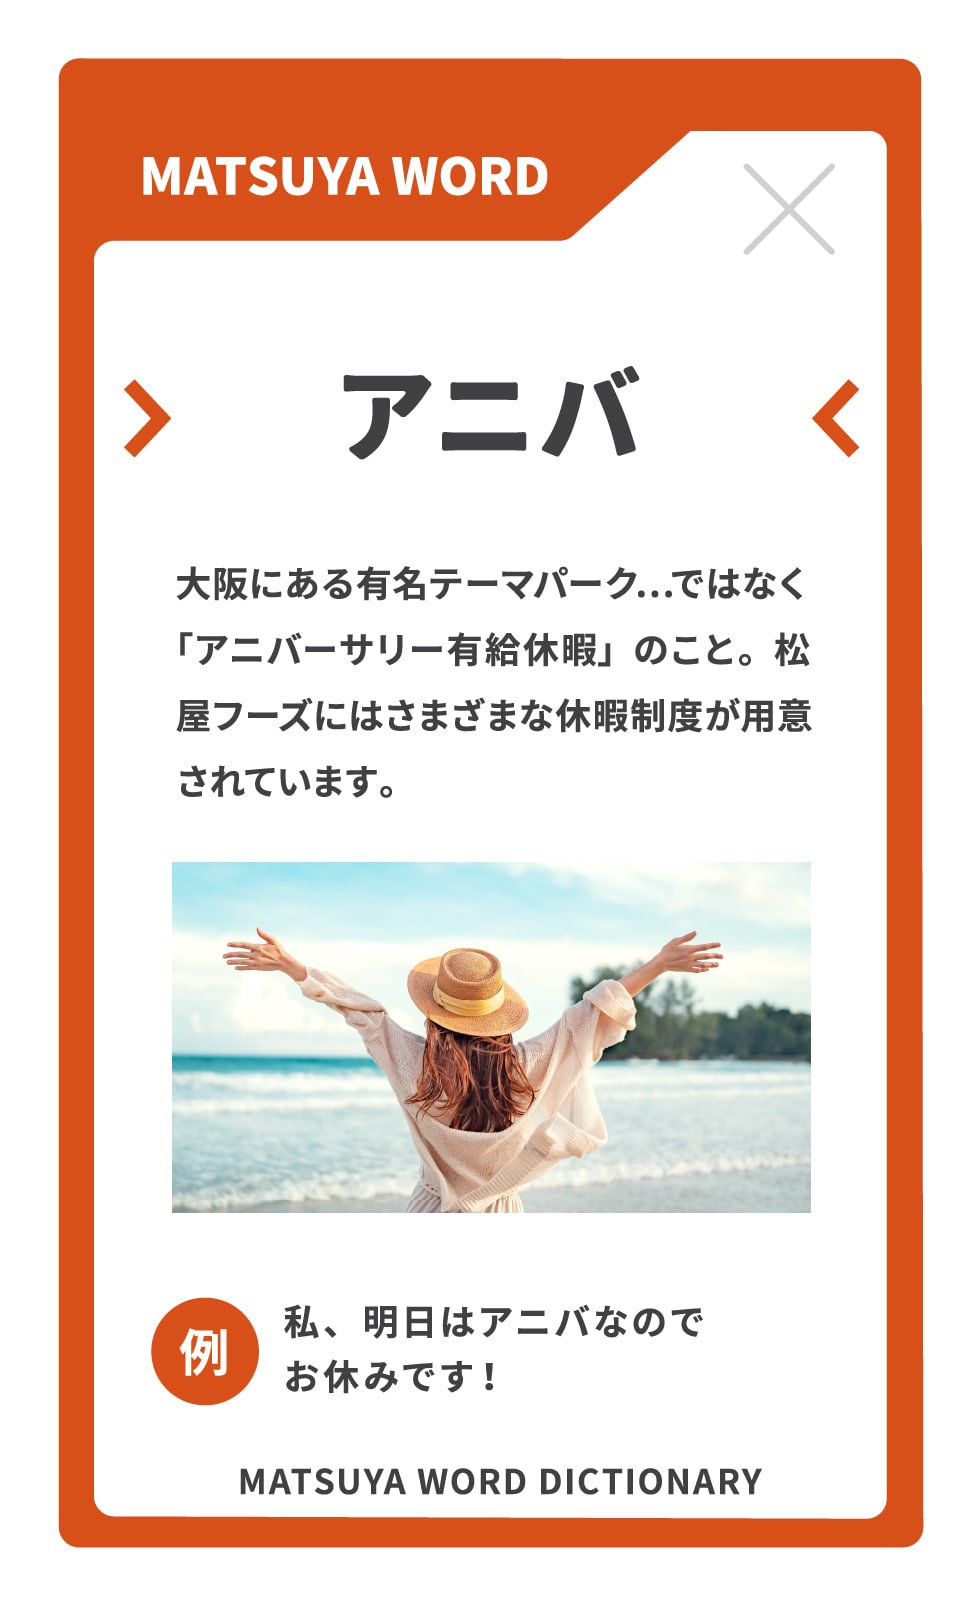 アニバ　大阪にある有名テーマパーク…ではなく「アニバーサリー有給休暇」のこと。松屋フーズにはさまざまな休暇制度が用意されています。例：私、明日はアニバなのでお休みです！